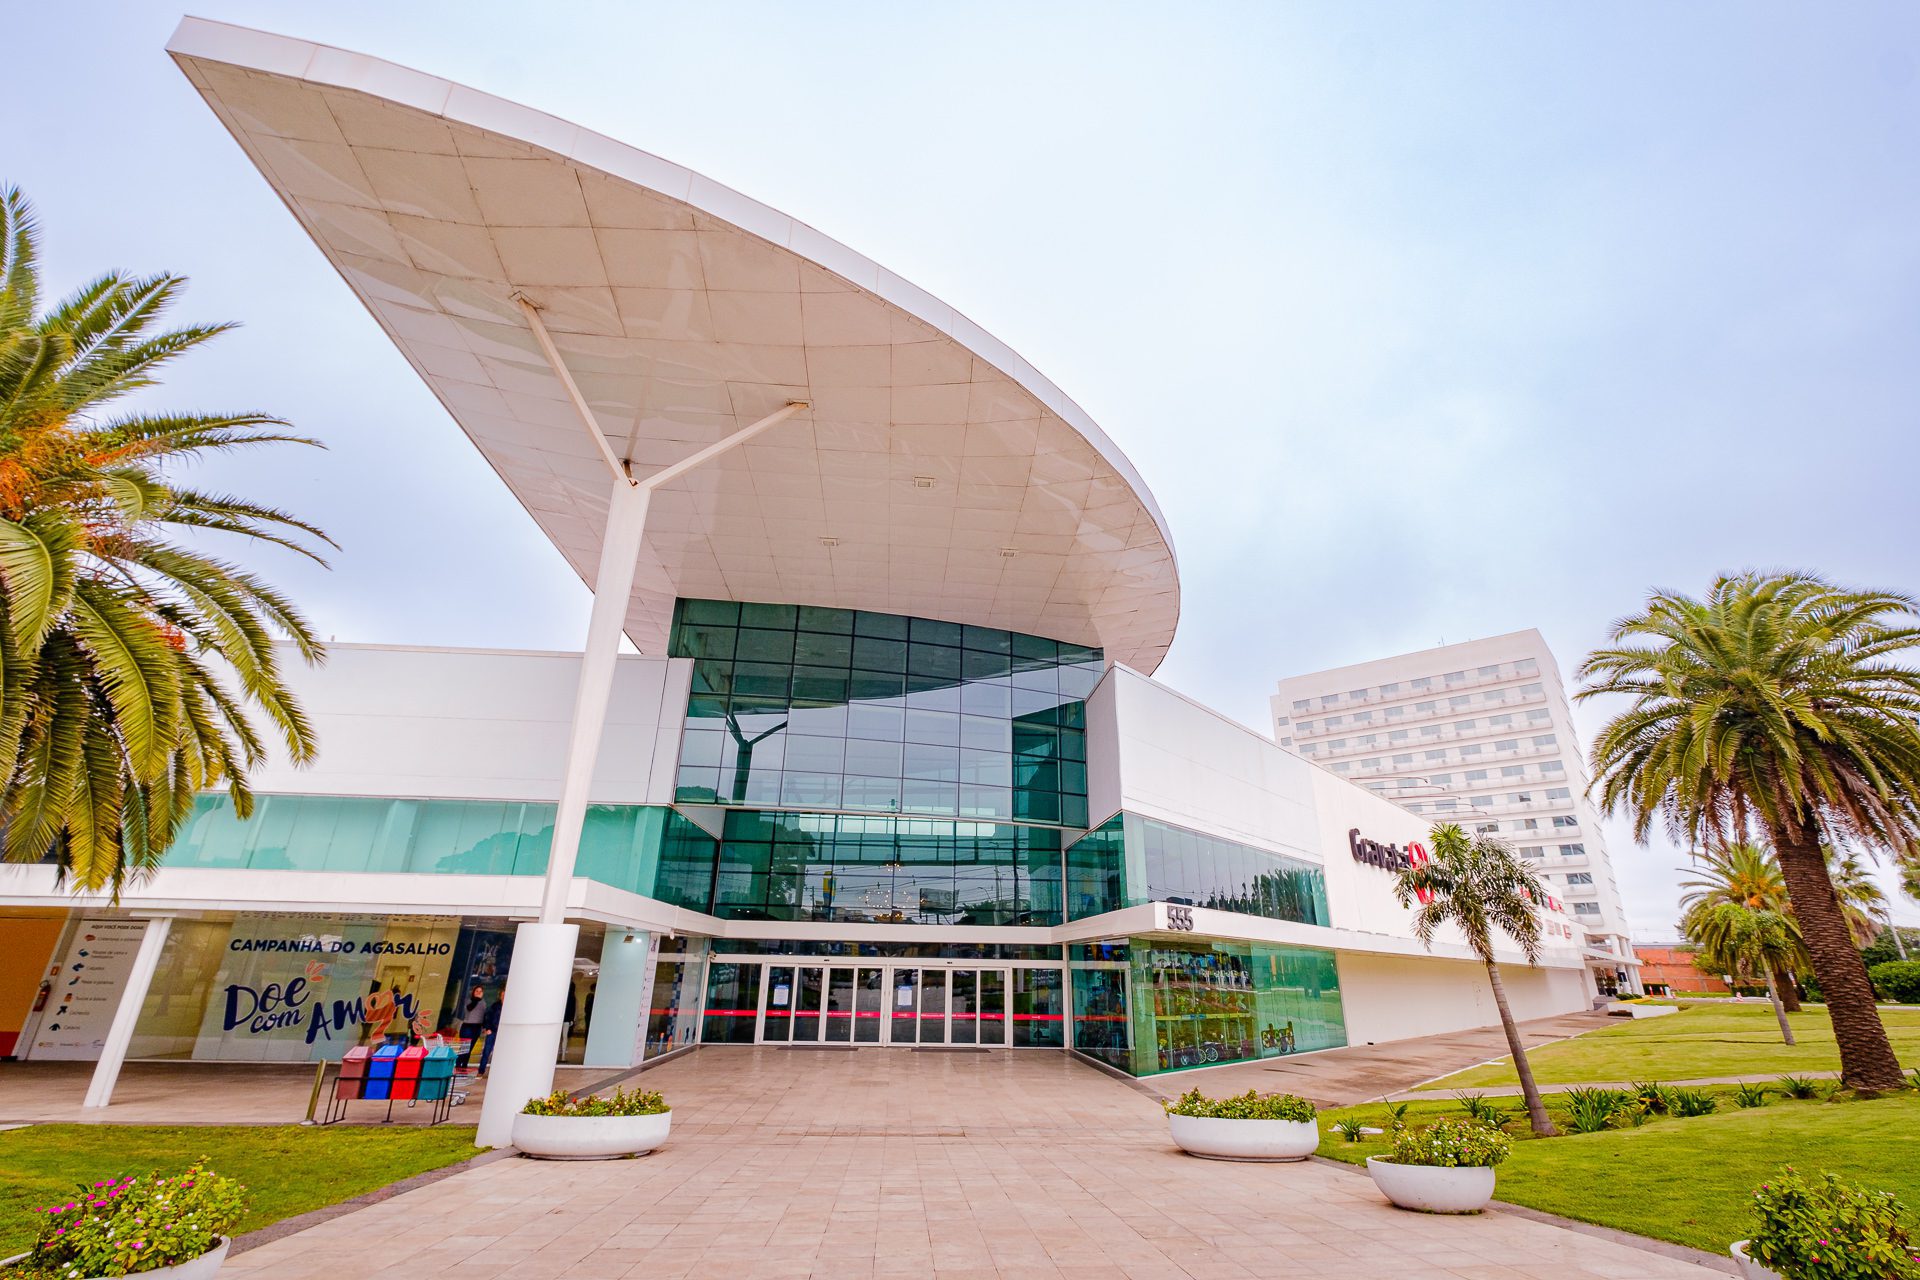 Center Shopping Rio realiza Campeonato de Minecraft neste domingo, De  Graça Eu Vou